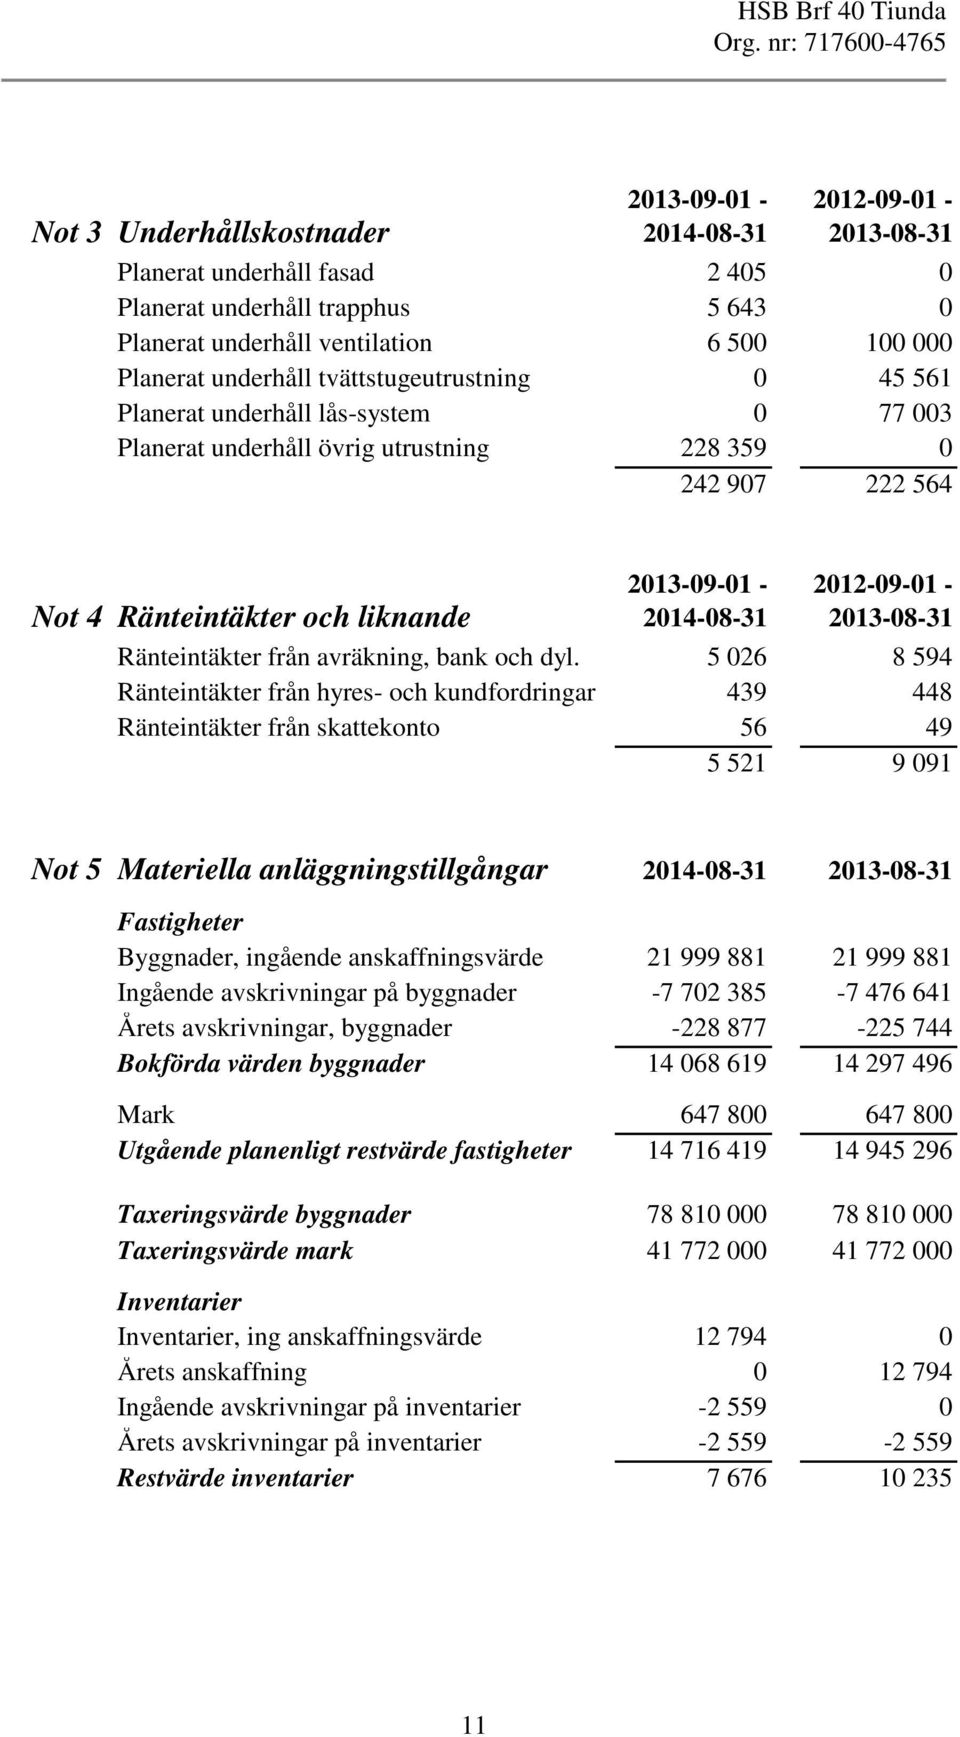 2012-09-01-2013-08-31 Ränteintäkter från avräkning, bank och dyl.